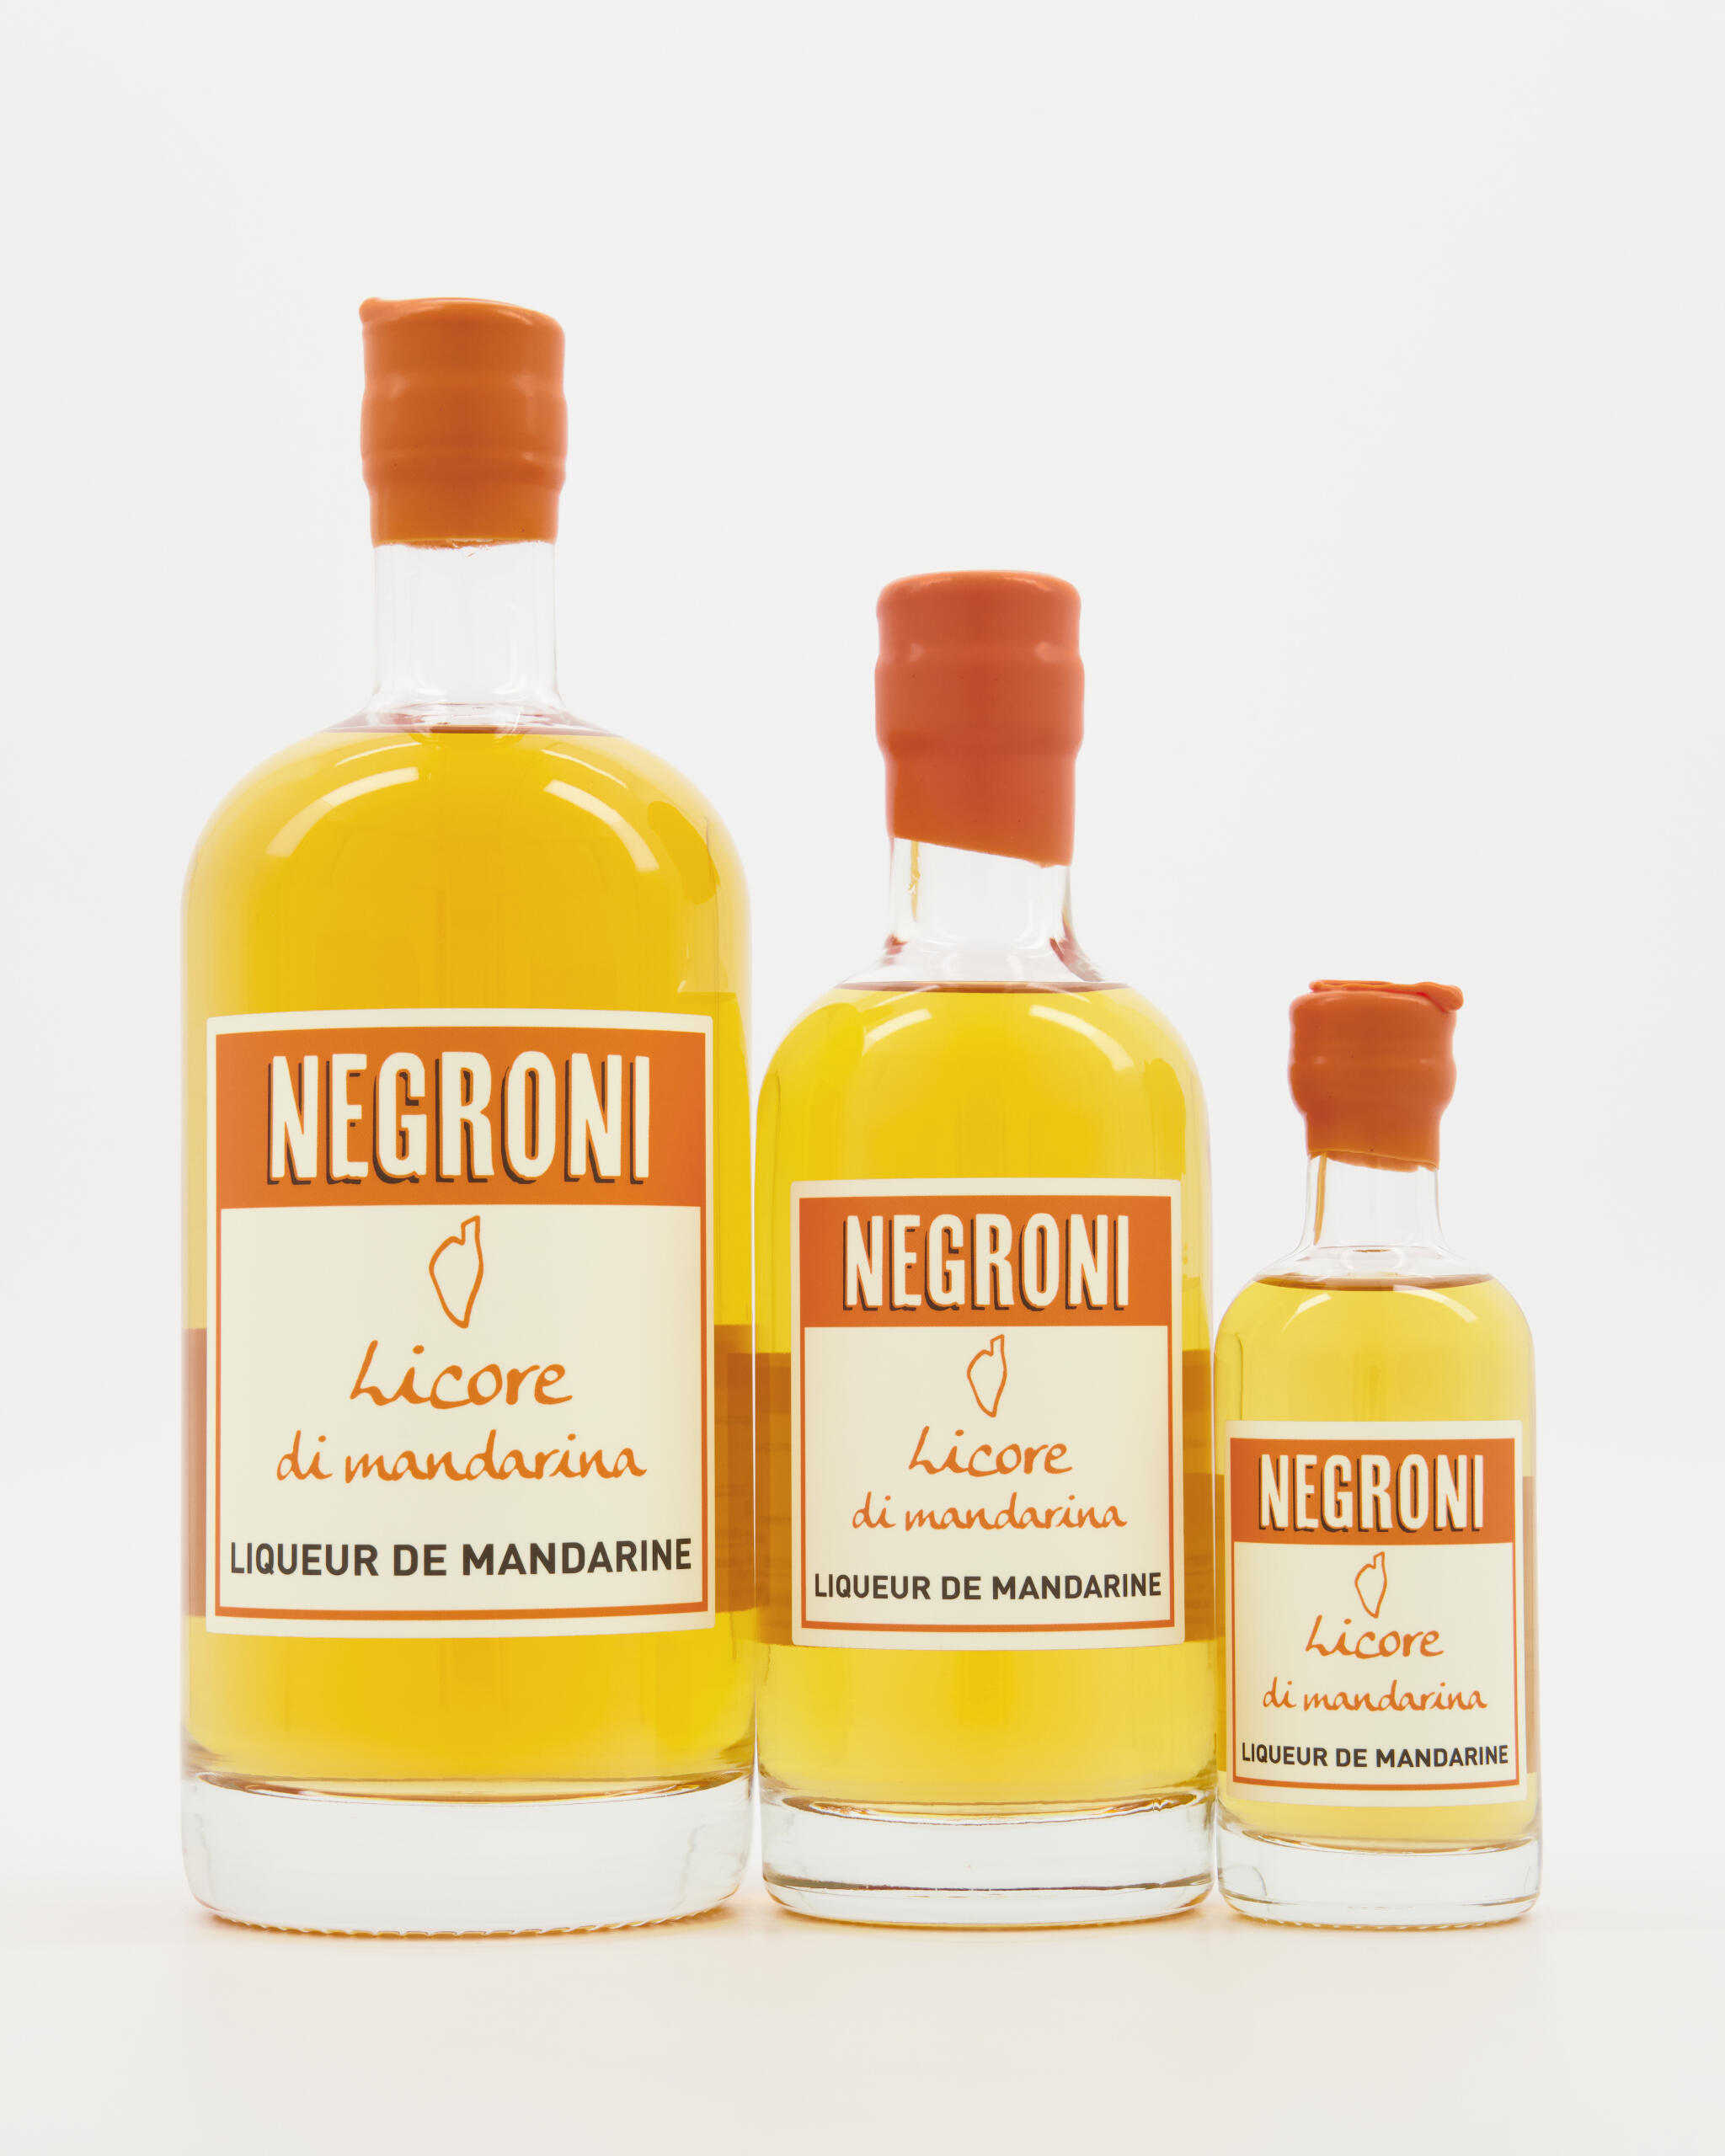 Fior Di Notte Negroni Liqueur de Mandarine 33% 70 cl - Le Chemin de